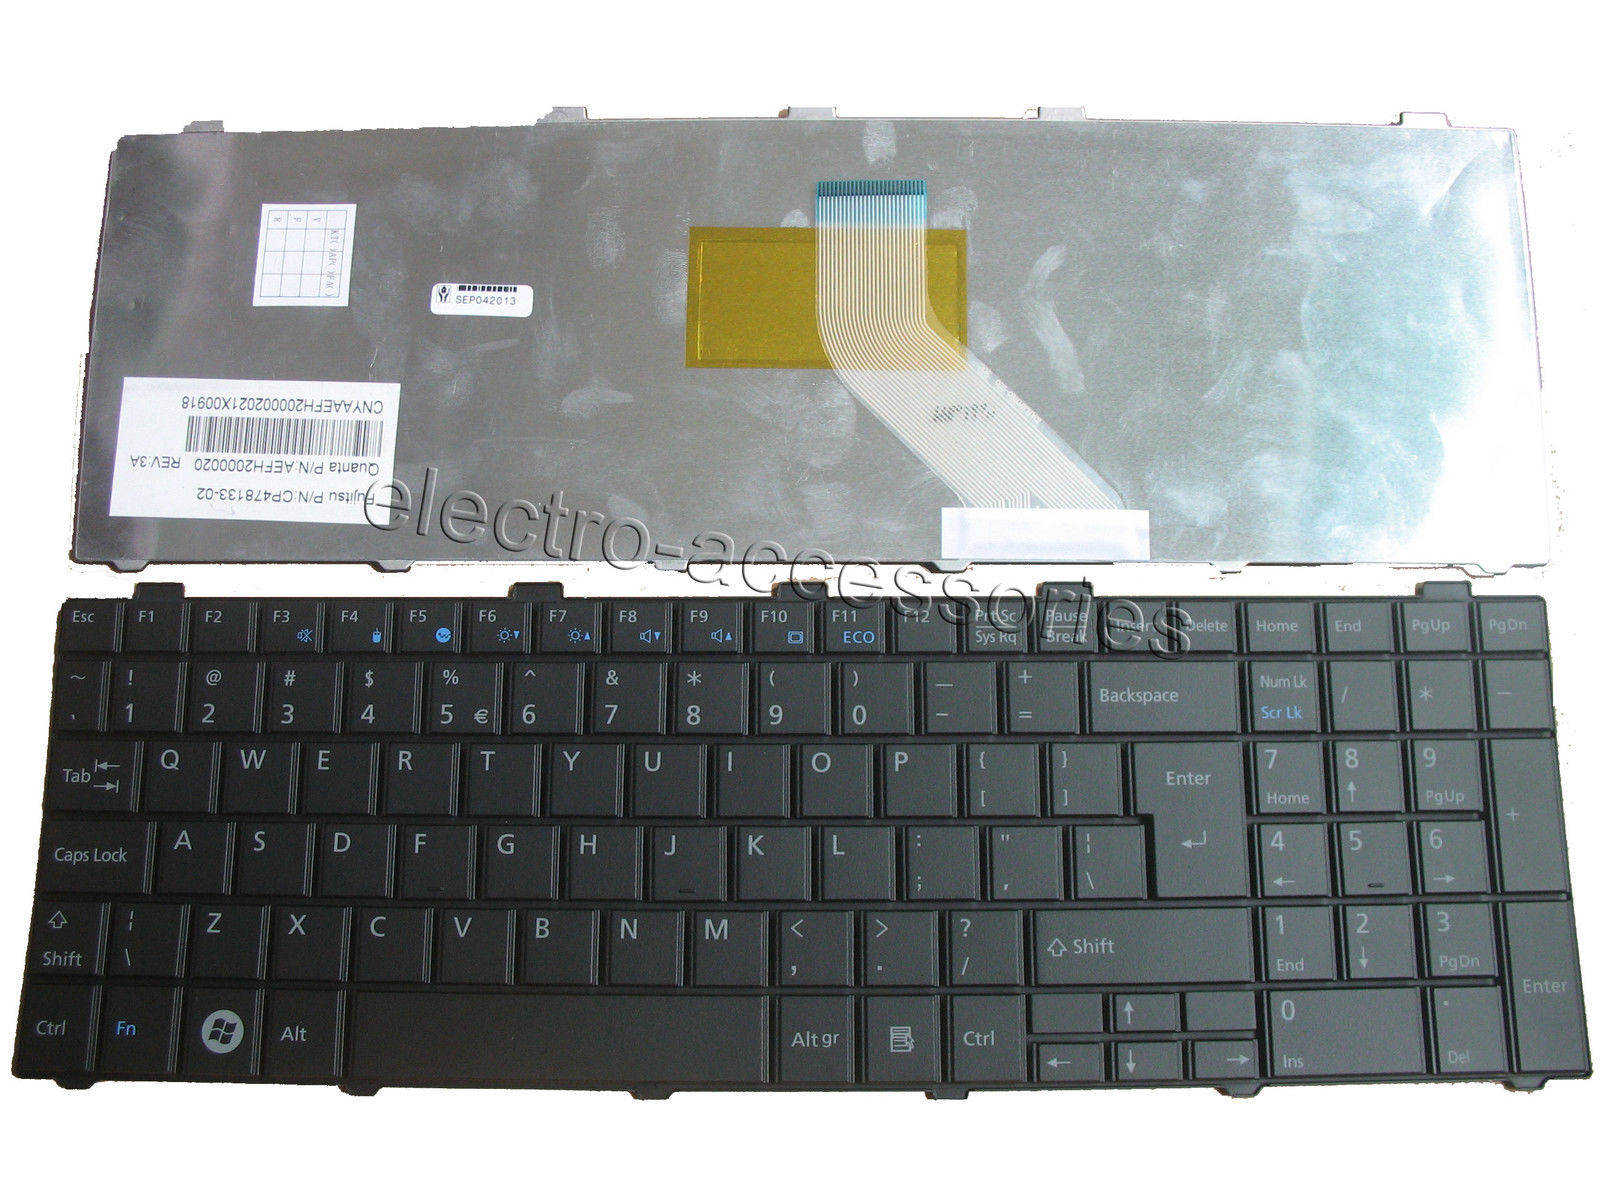 Bàn Phím - Keyboard Laptop Fujitsu Lifebook AH530 AH531 NH751